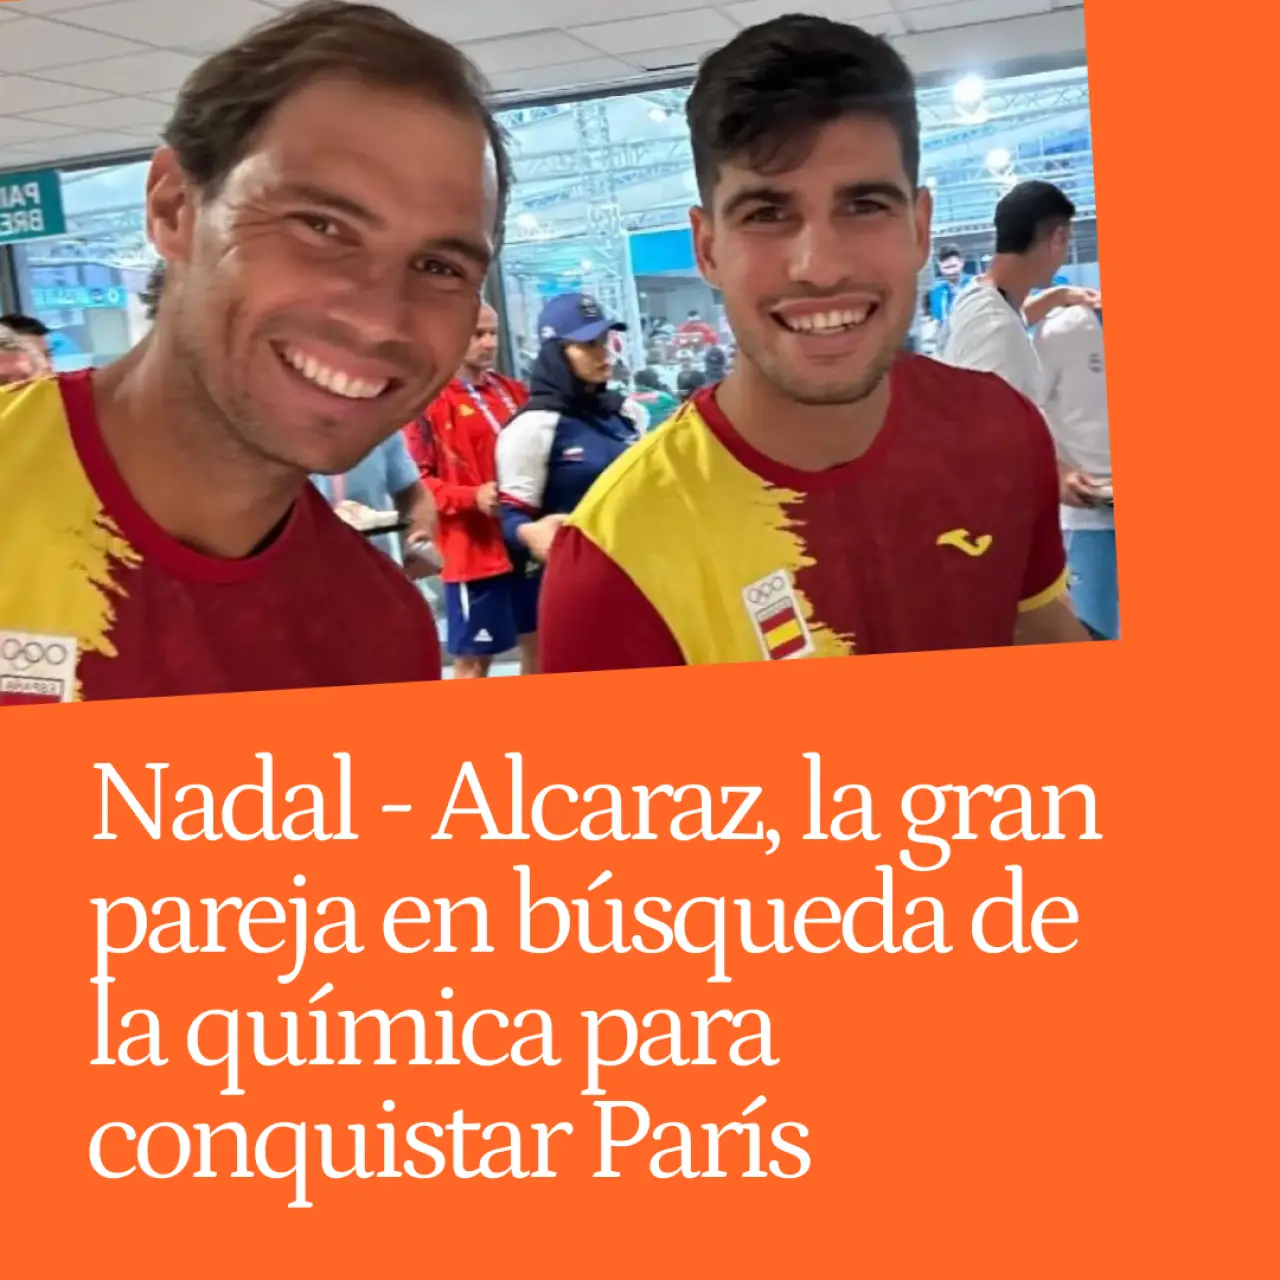 Nadal - Alcaraz, la gran pareja en búsqueda de la química para conquistar París: "Rafa será quien dirija el juego"